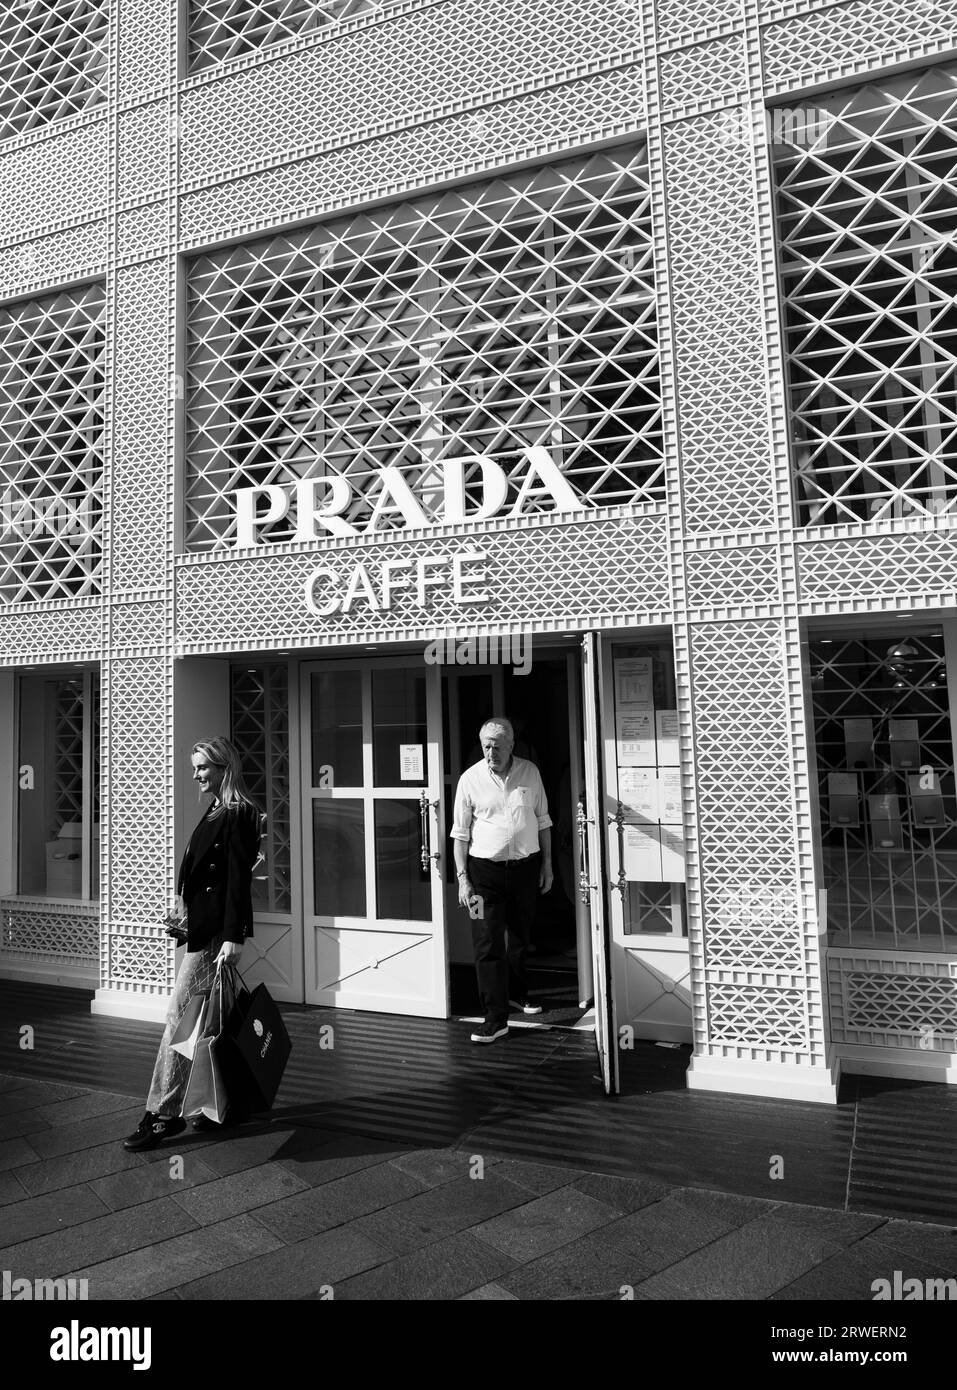 Posant à l'extérieur du, Prada Cafe, Harrods, Londres, Angleterre, ROYAUME-UNI, GB. Banque D'Images